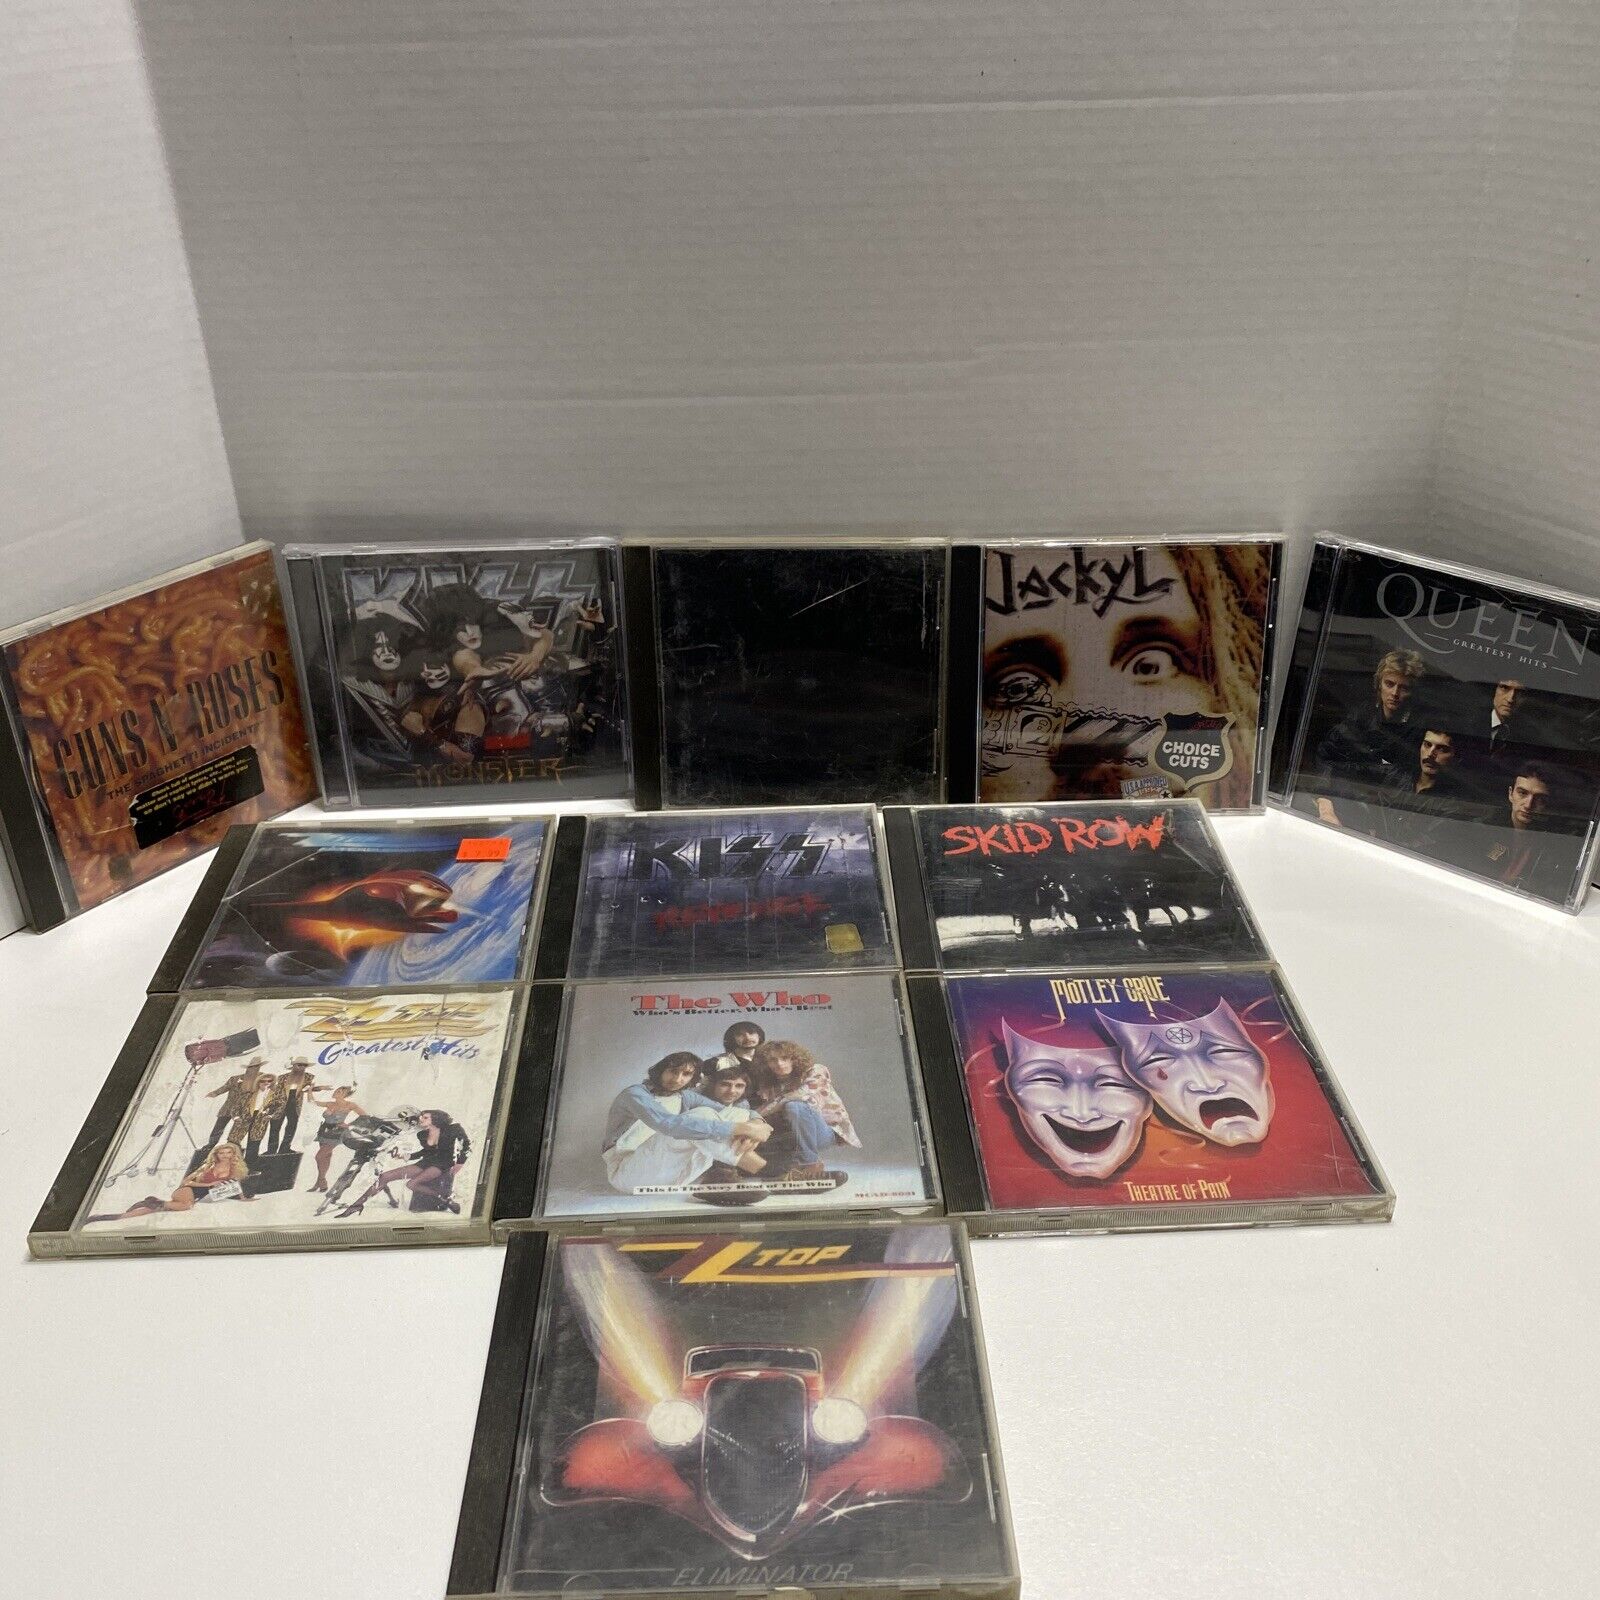 Classic Rock CDs Lot of 12 - Metallica Queen GnR Kiss ZZ Top Motley Crue Jackyl